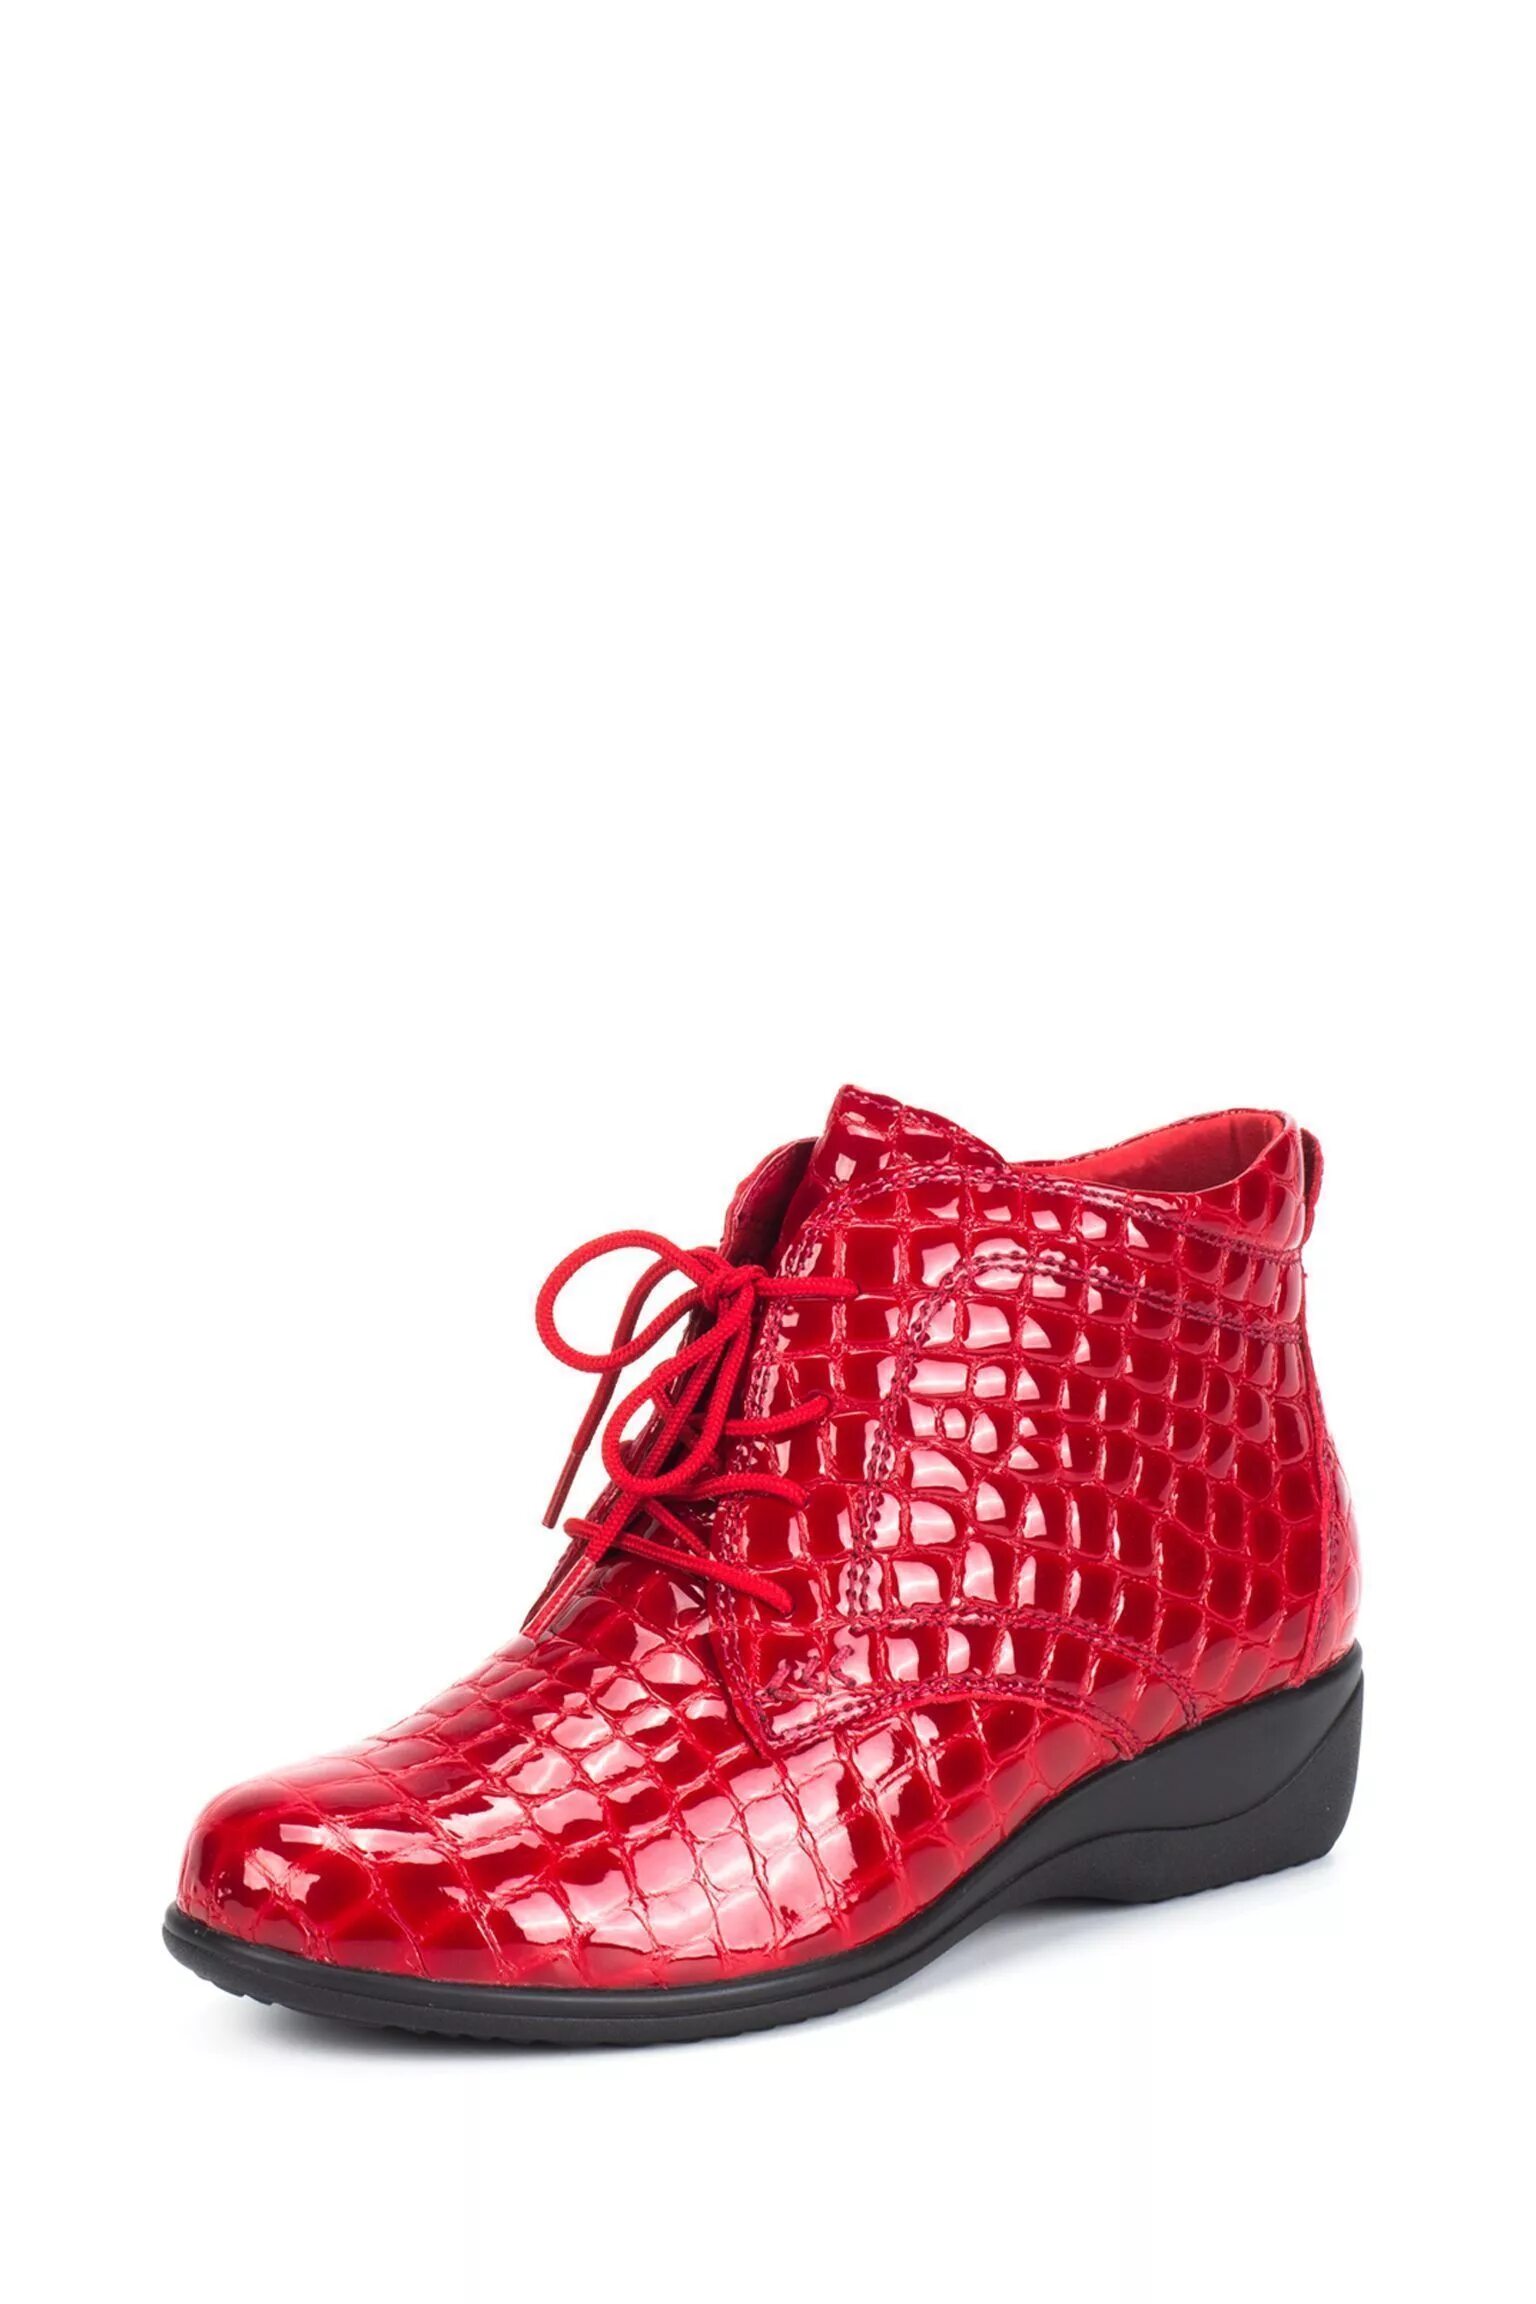 Красные ботинки. Красные ботинки женские. Красные ботиночки женские. Красные полуботинки. Купить ботинки на wildberries